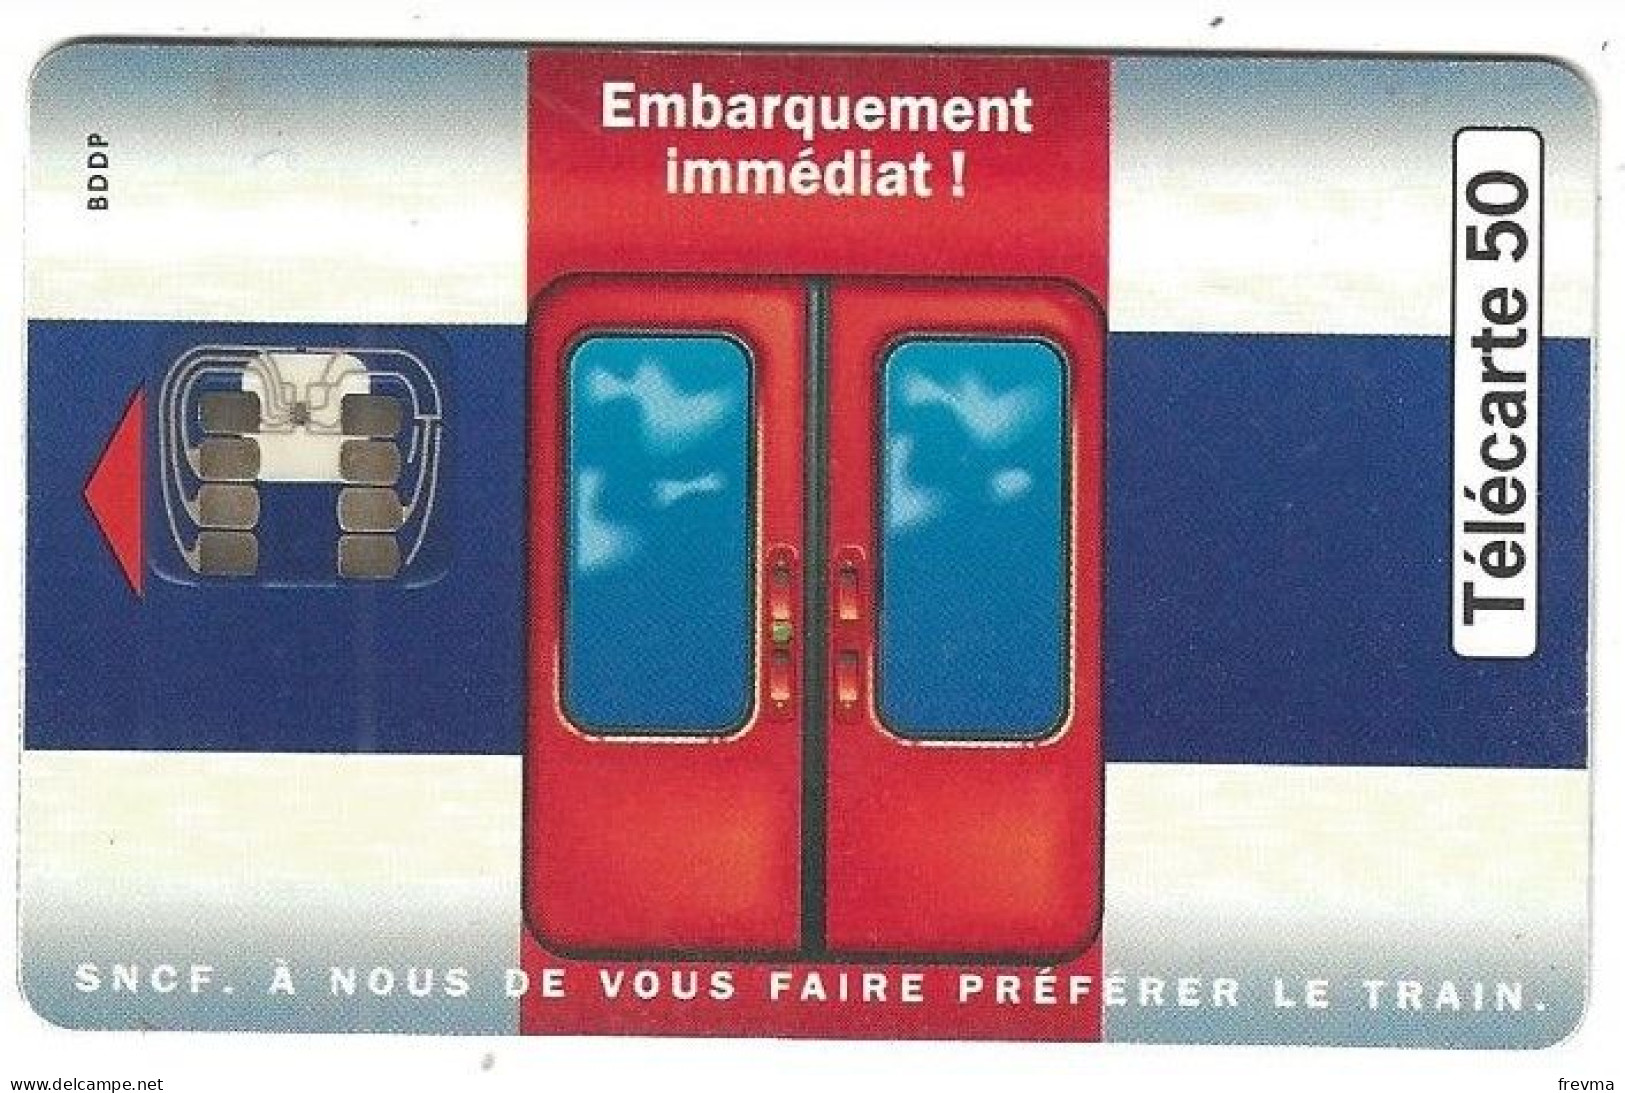 Telecarte Embarquement Immediat - 1999